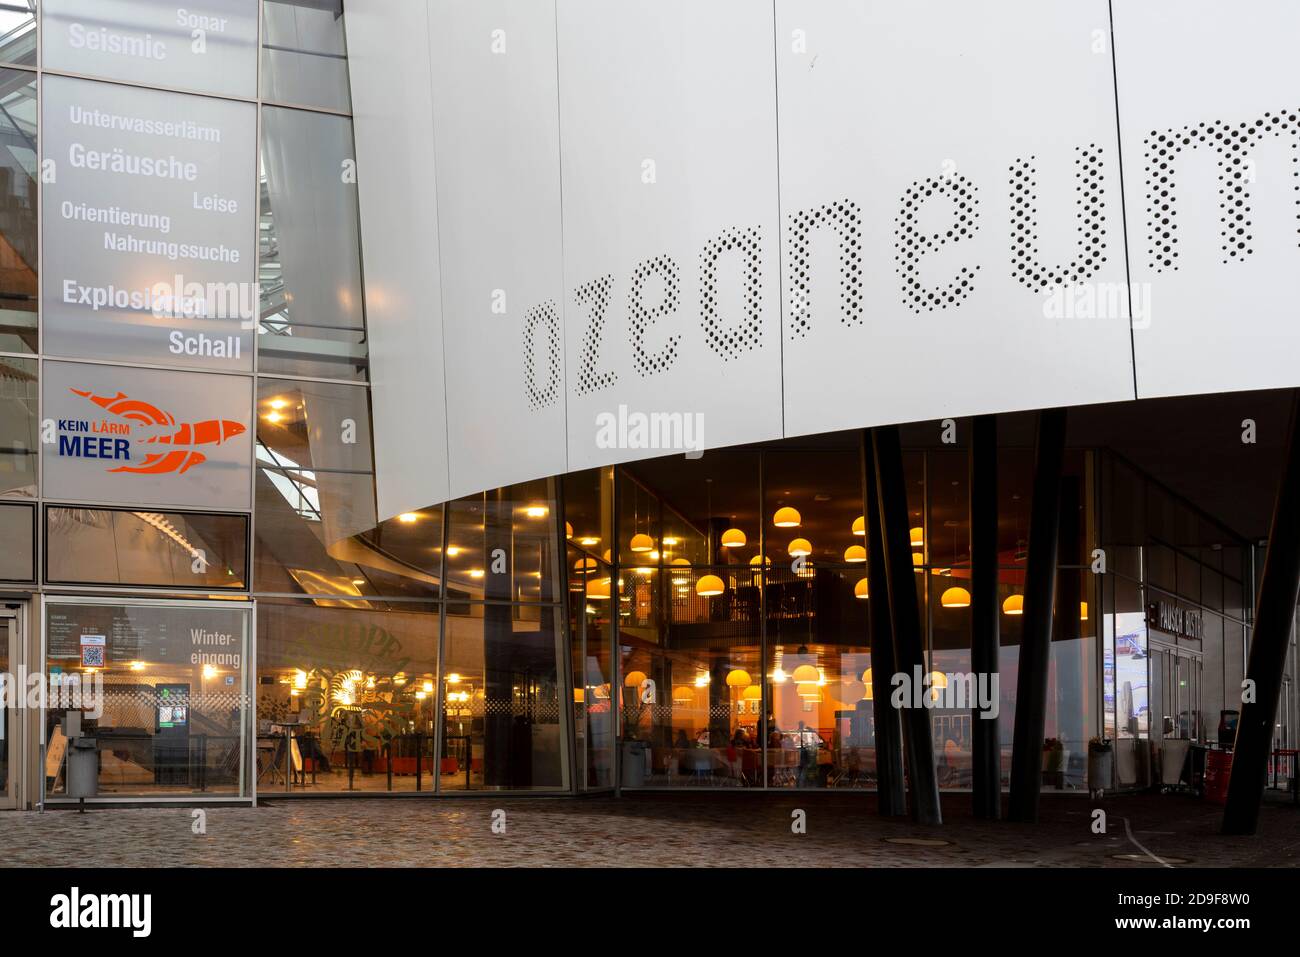 Stralsund, Deutschland. Oktober 2020. Über dem Eingang zum Oze Ozeanum befindet sich der Schriftzug "NO NOISE OCEAN". Quelle: Stephan Schulz/dpa-Zentralbild/ZB/dpa/Alamy Live News Stockfoto